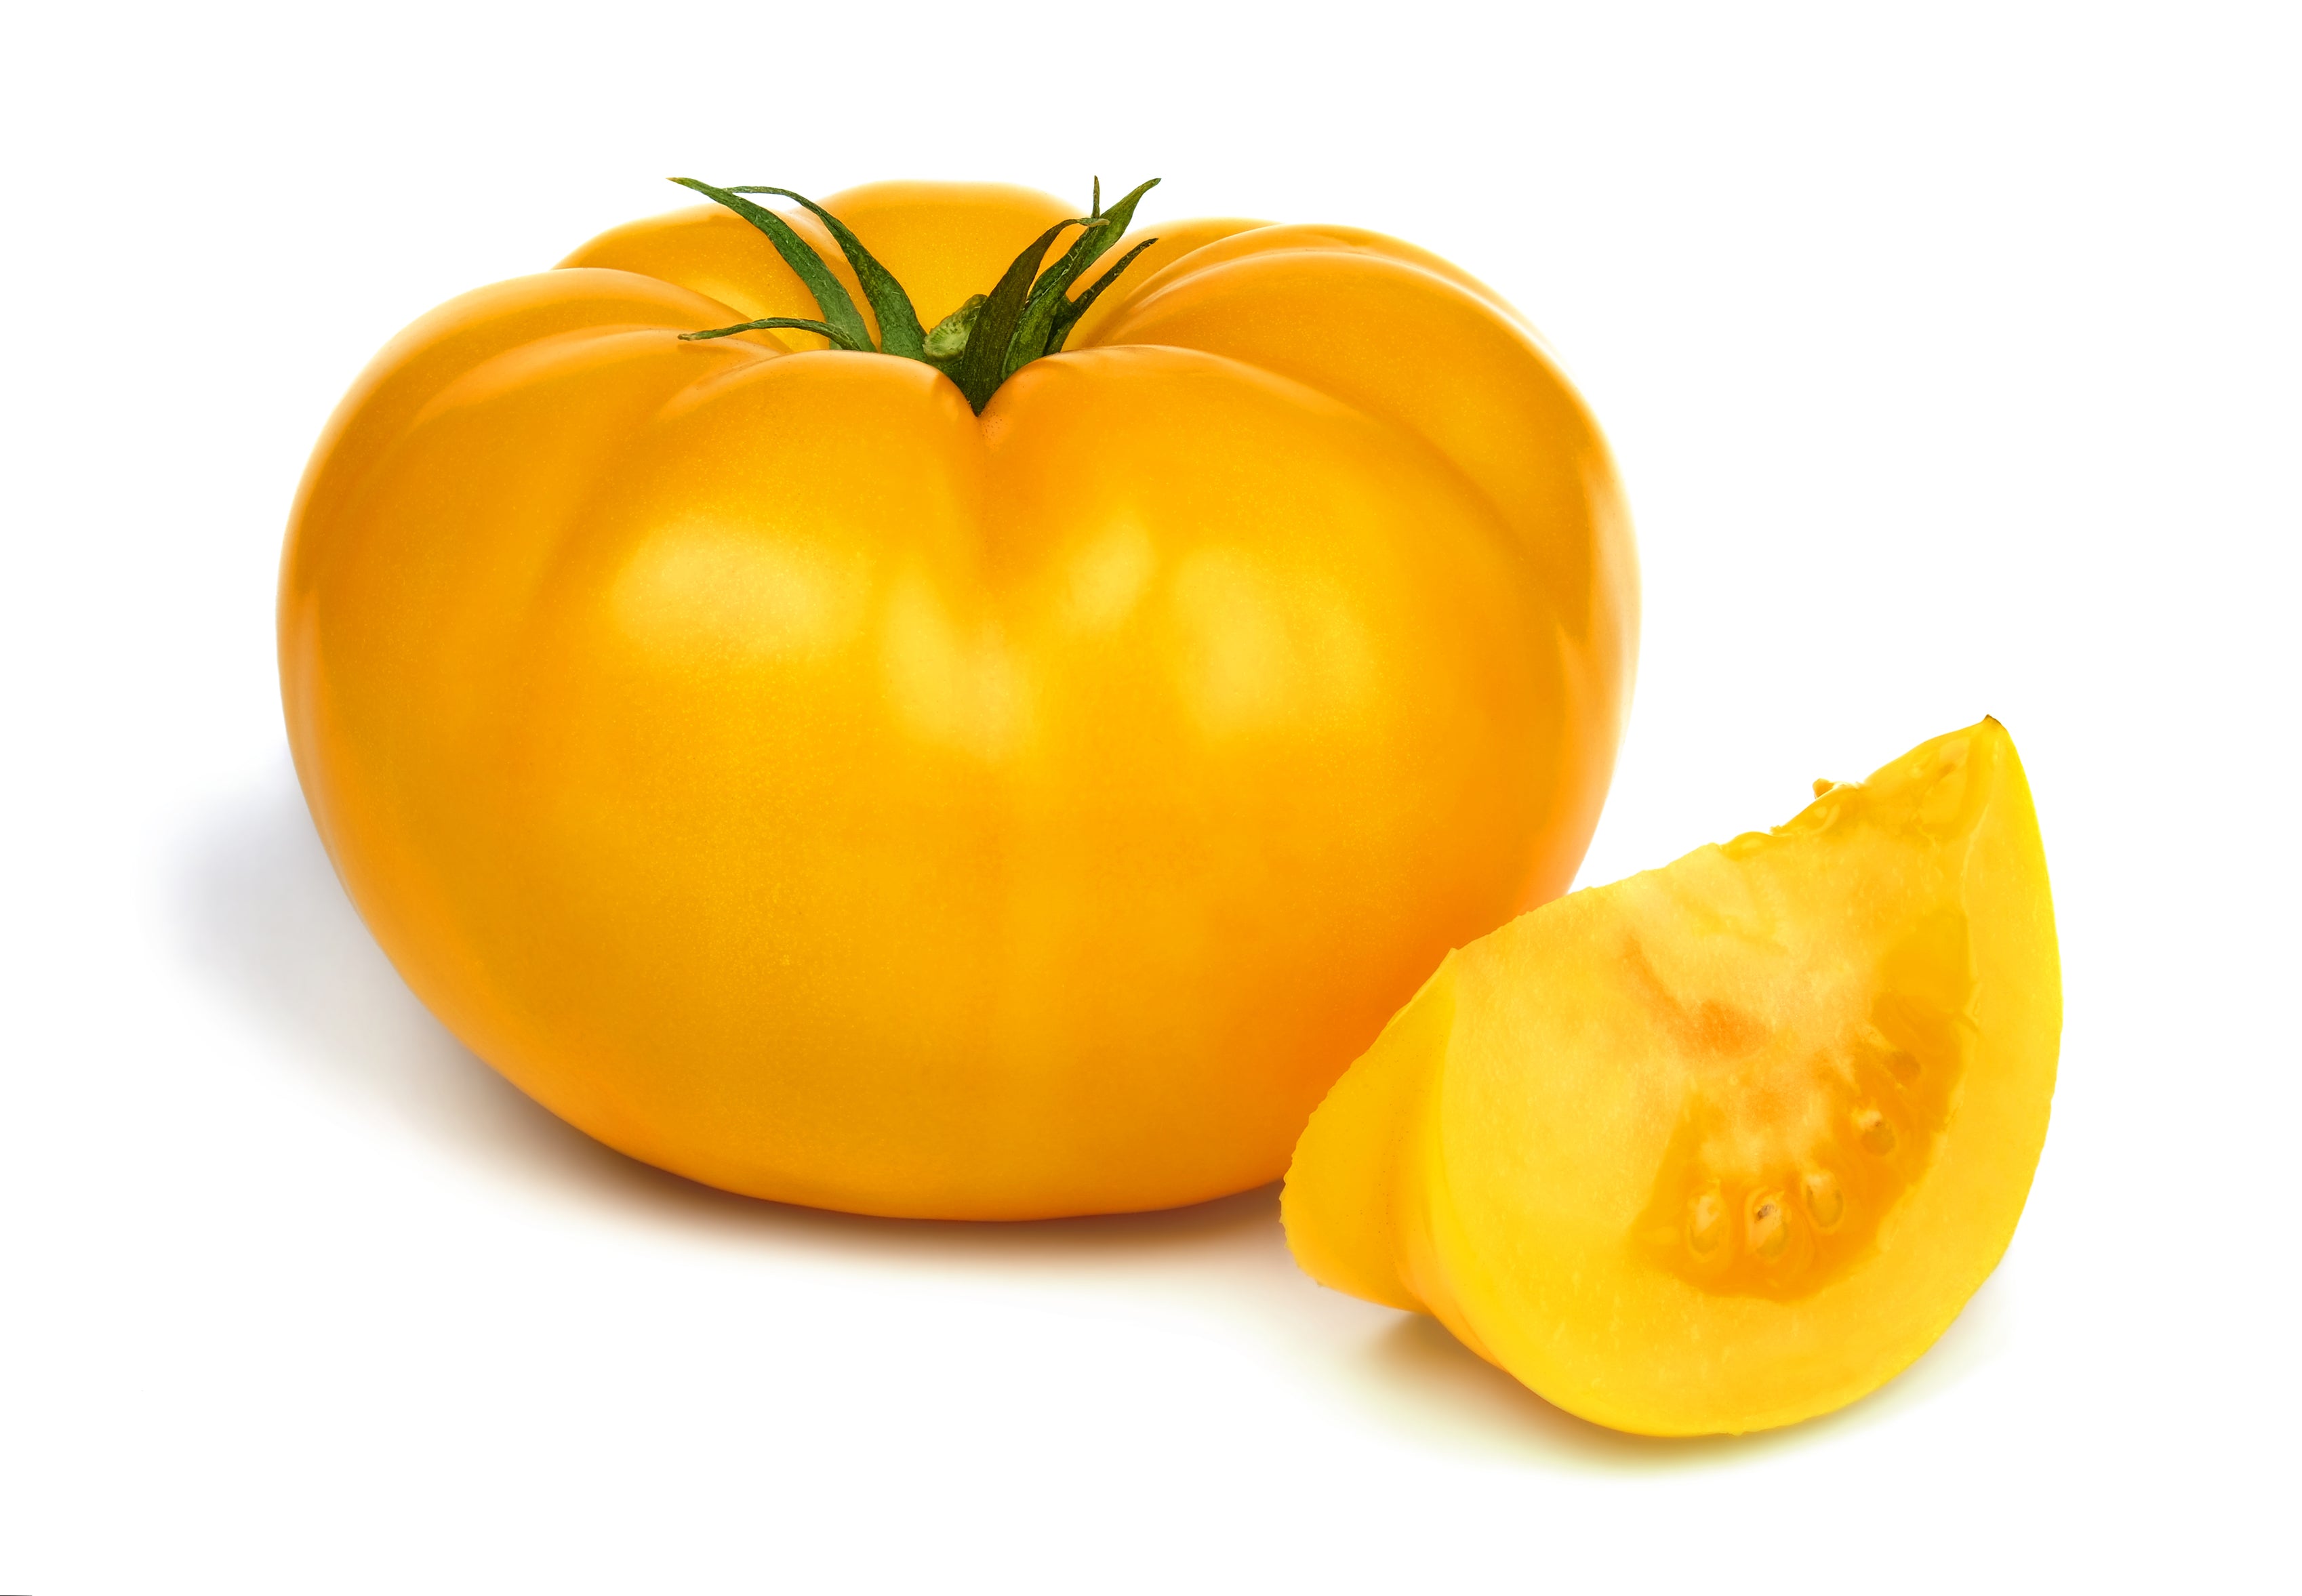 Brandywine Yellow Tomato Seeds - Heirloom